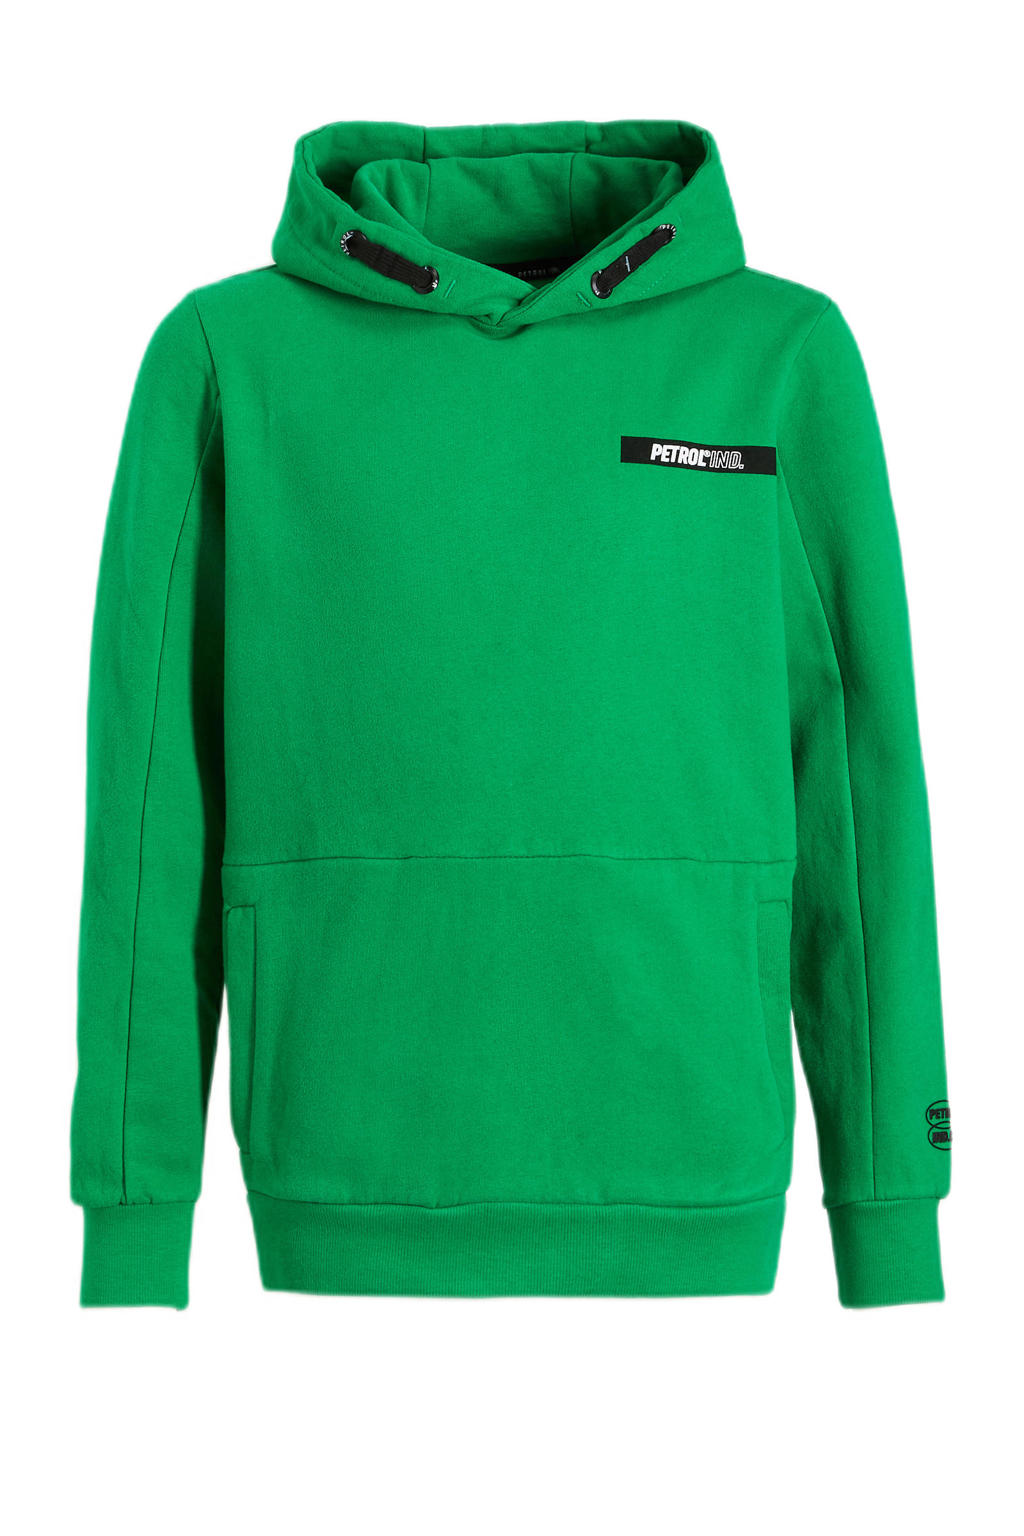 Petrol Industries hoodie groen